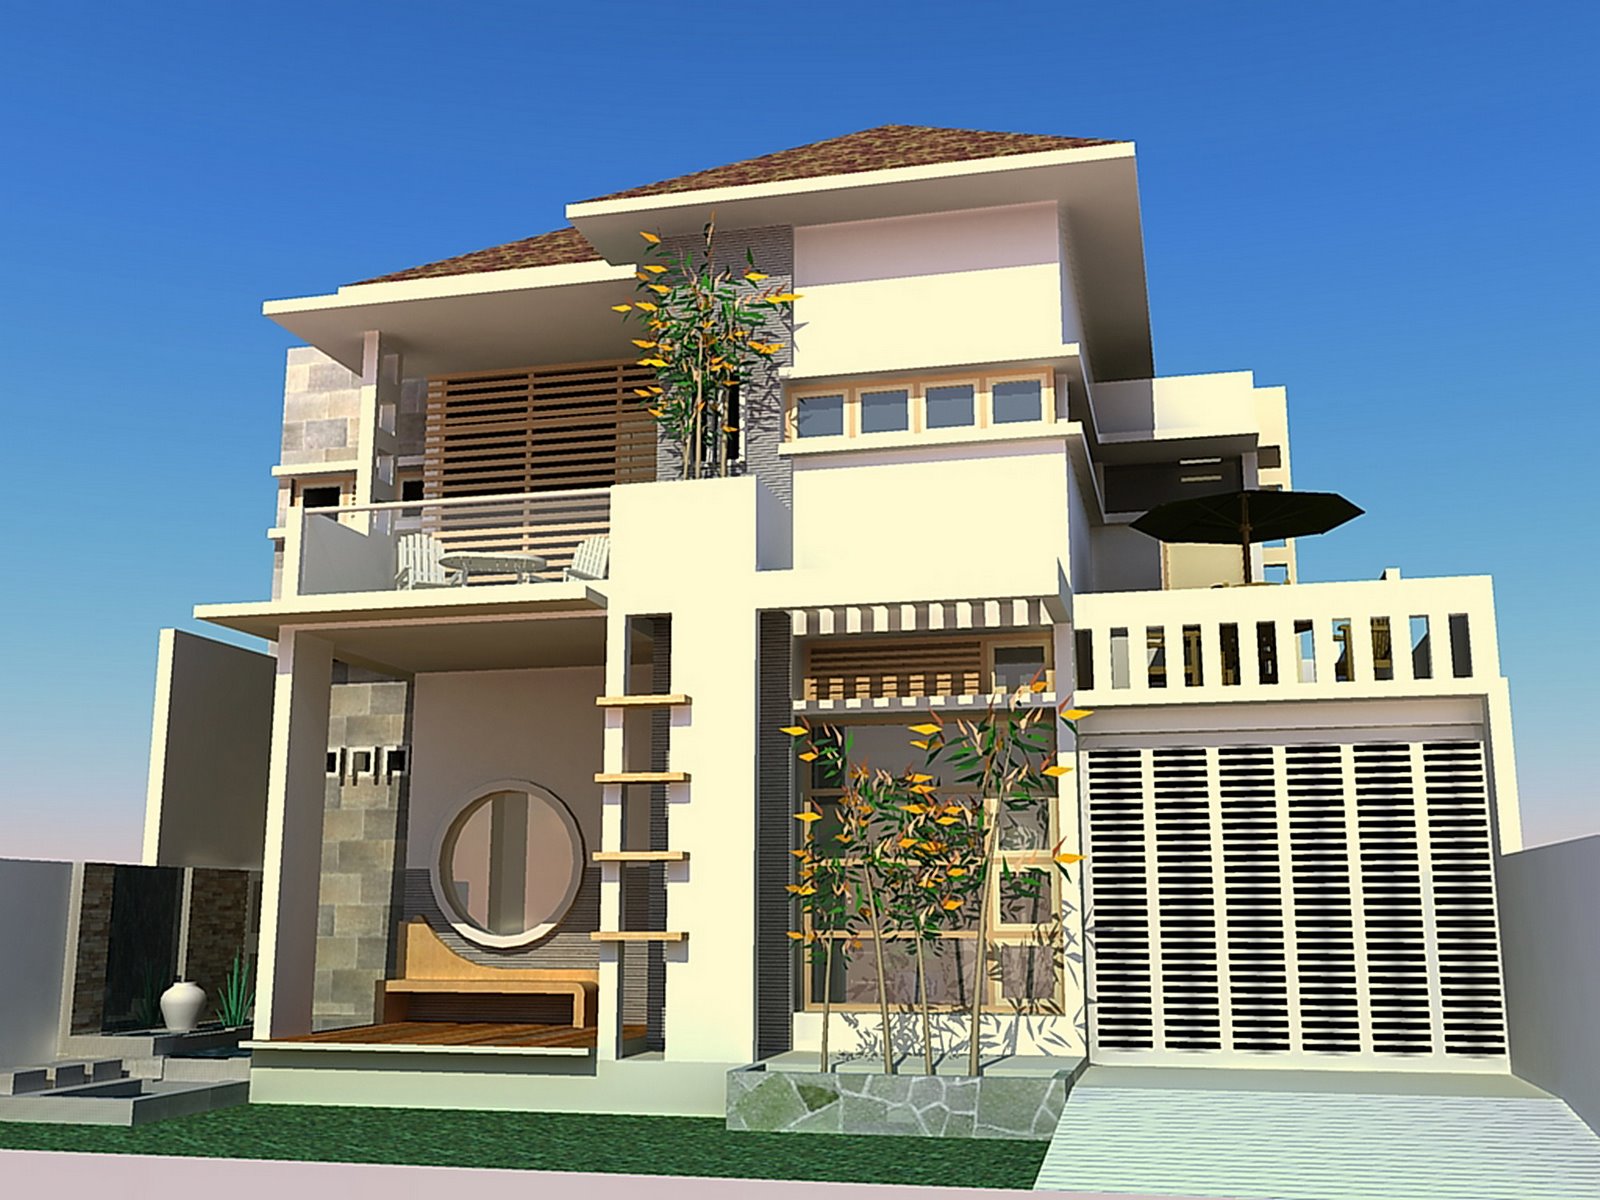 Desain Rumah Minimalis 2 Lantai Tampak Depan 2016 ...